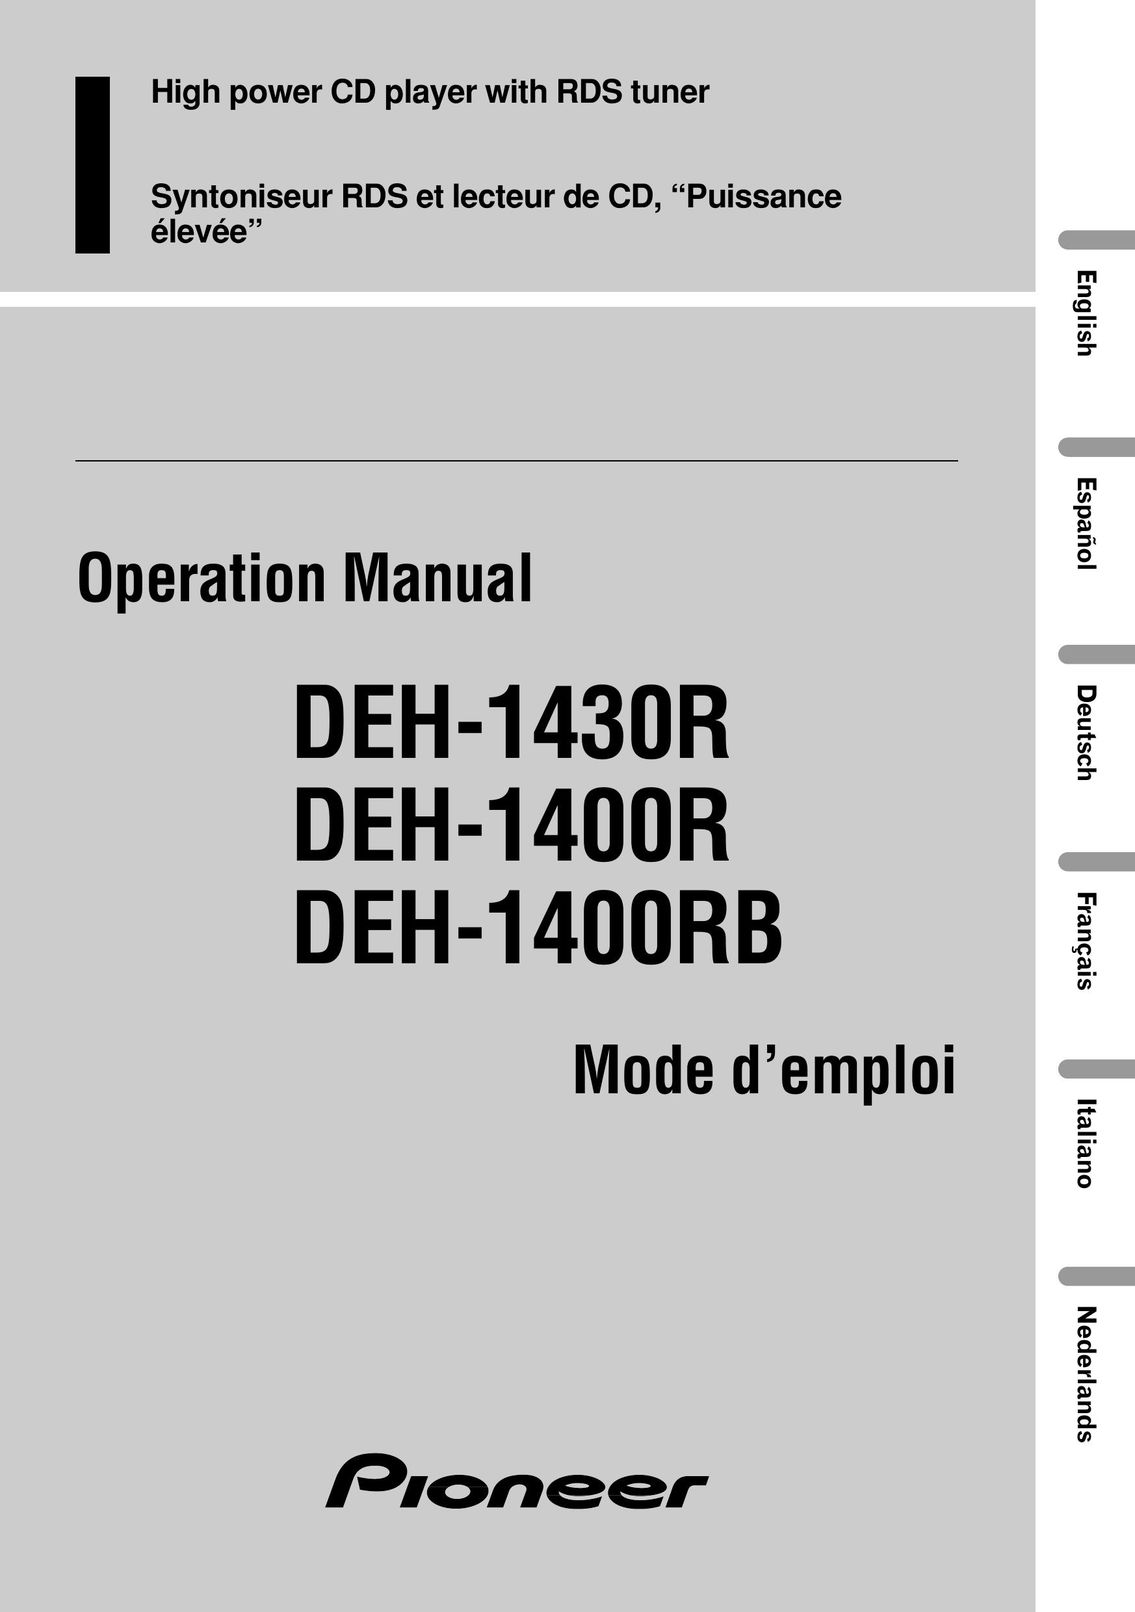 Pioneer DEH-1430R CD Player User Manual